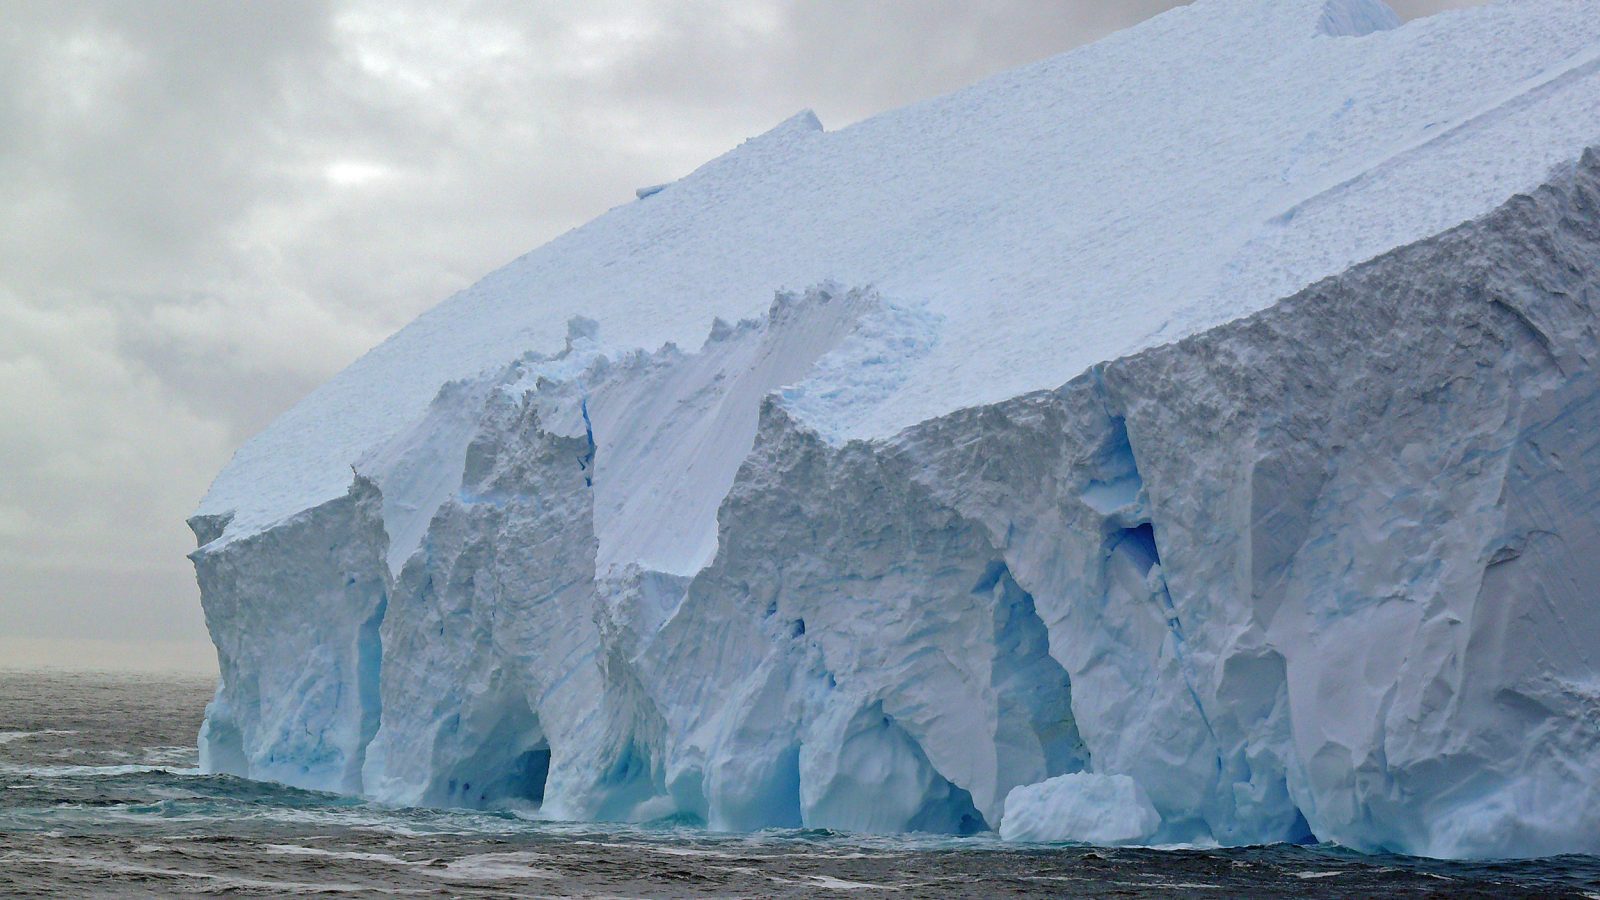 De acuerdo al comunicado, el hielo marino antártico está disminuyendo a niveles preocupantes, al menos, desde el año 2016 (Europa Press)
